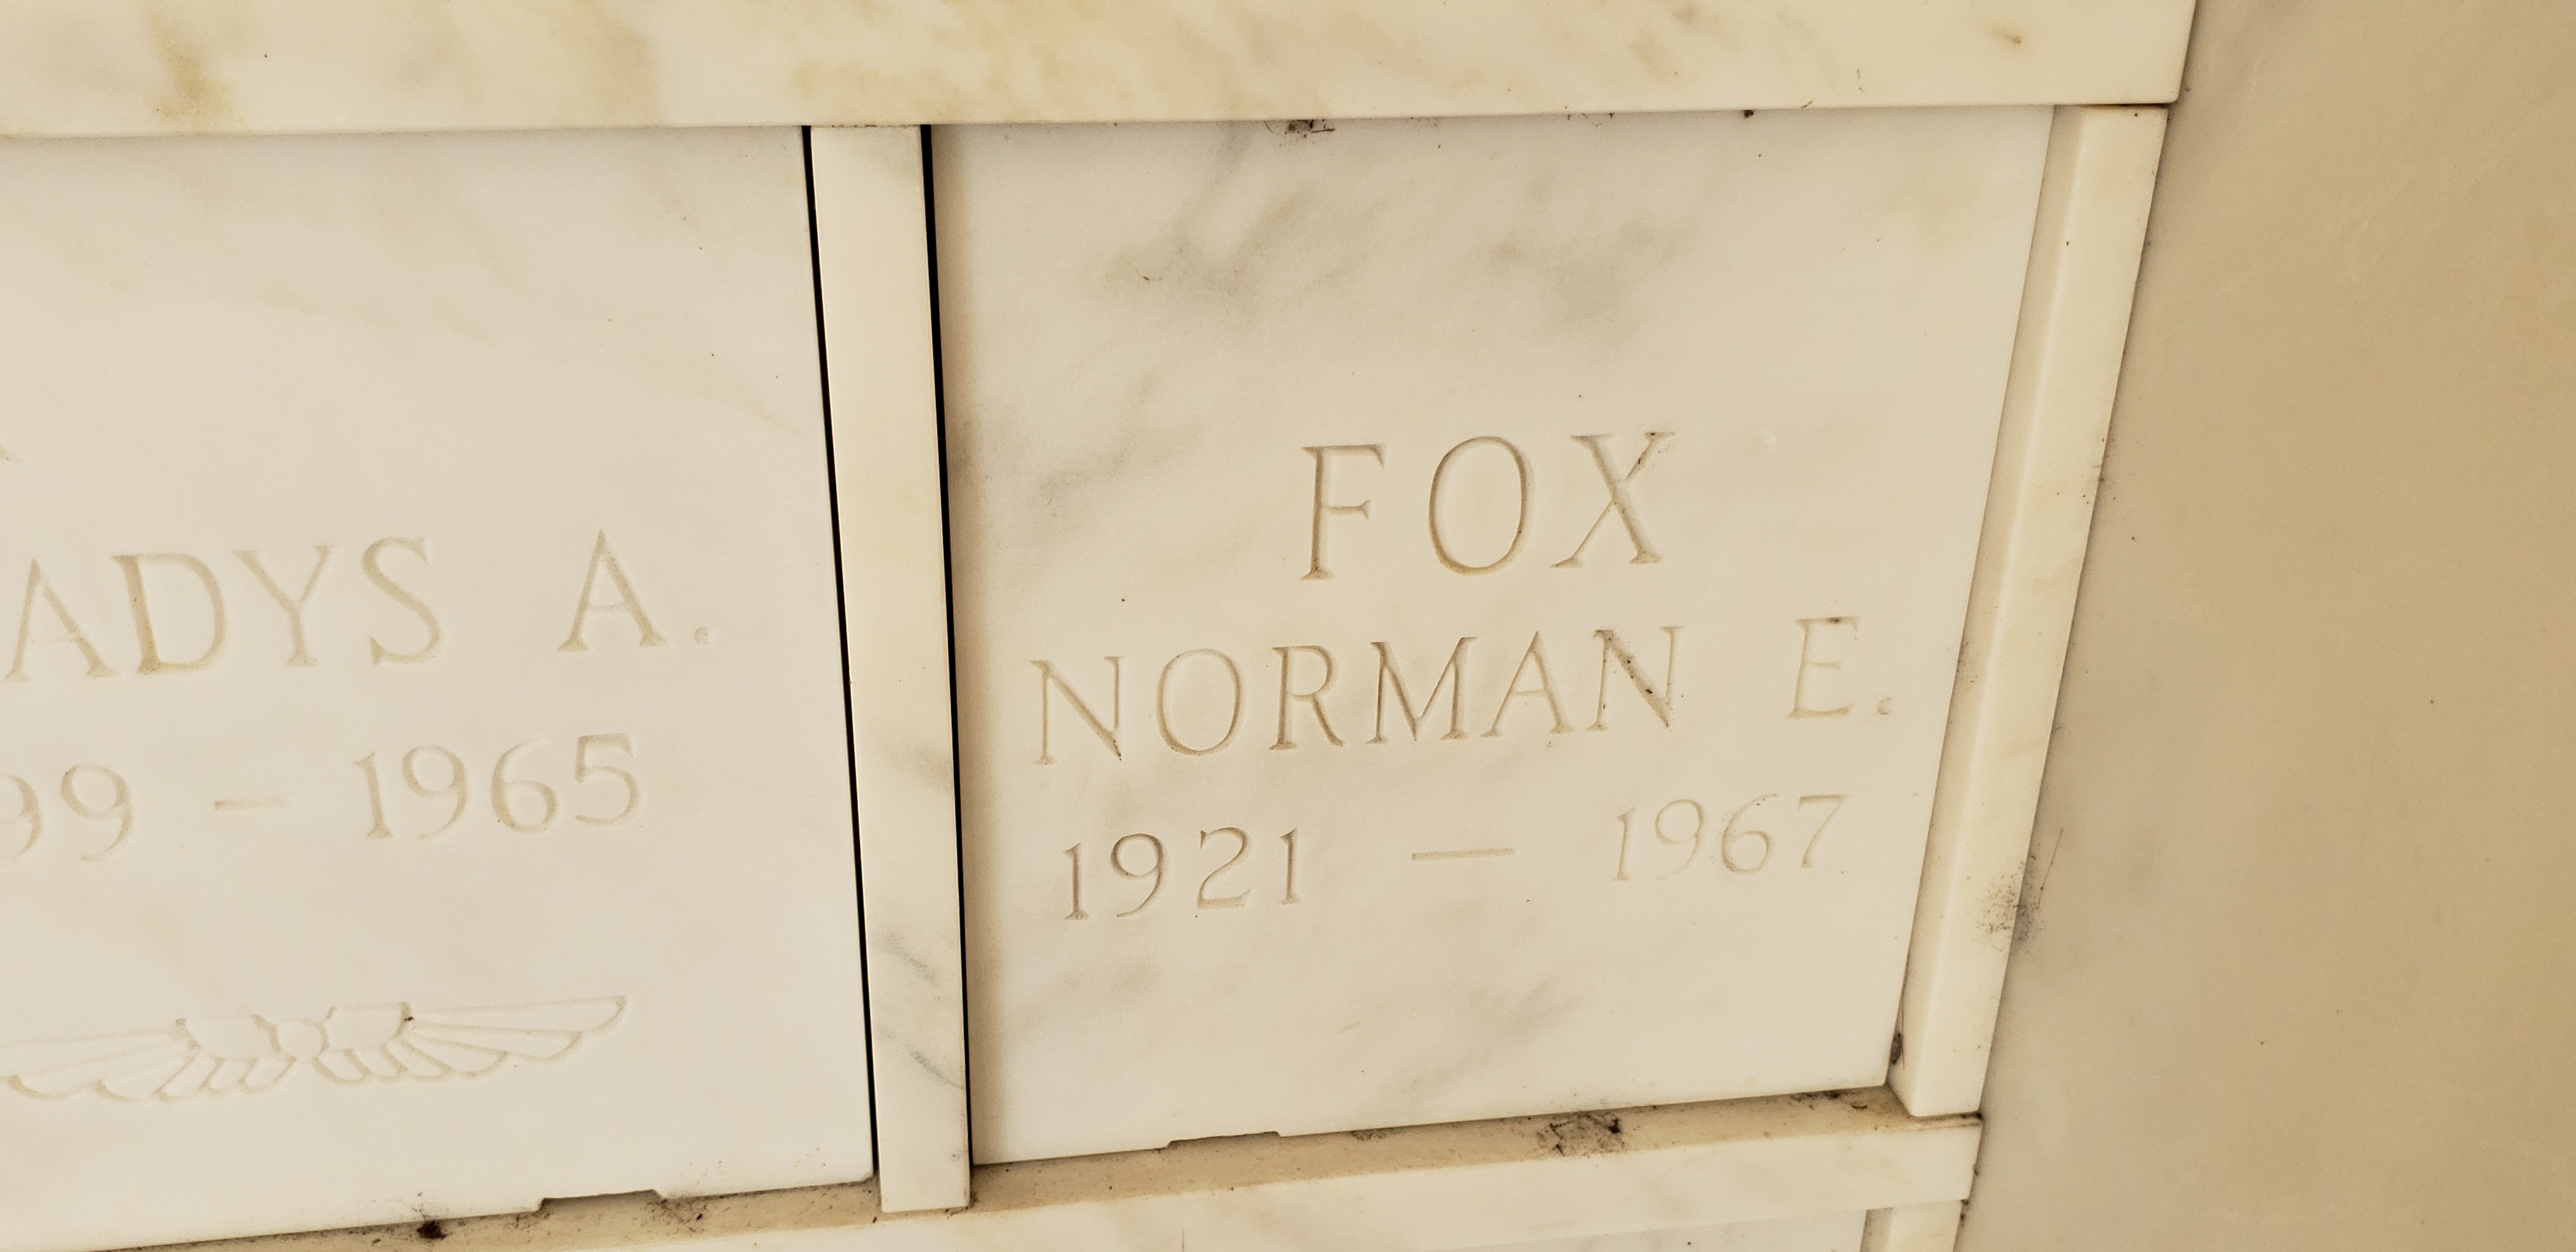 Norman E Fox